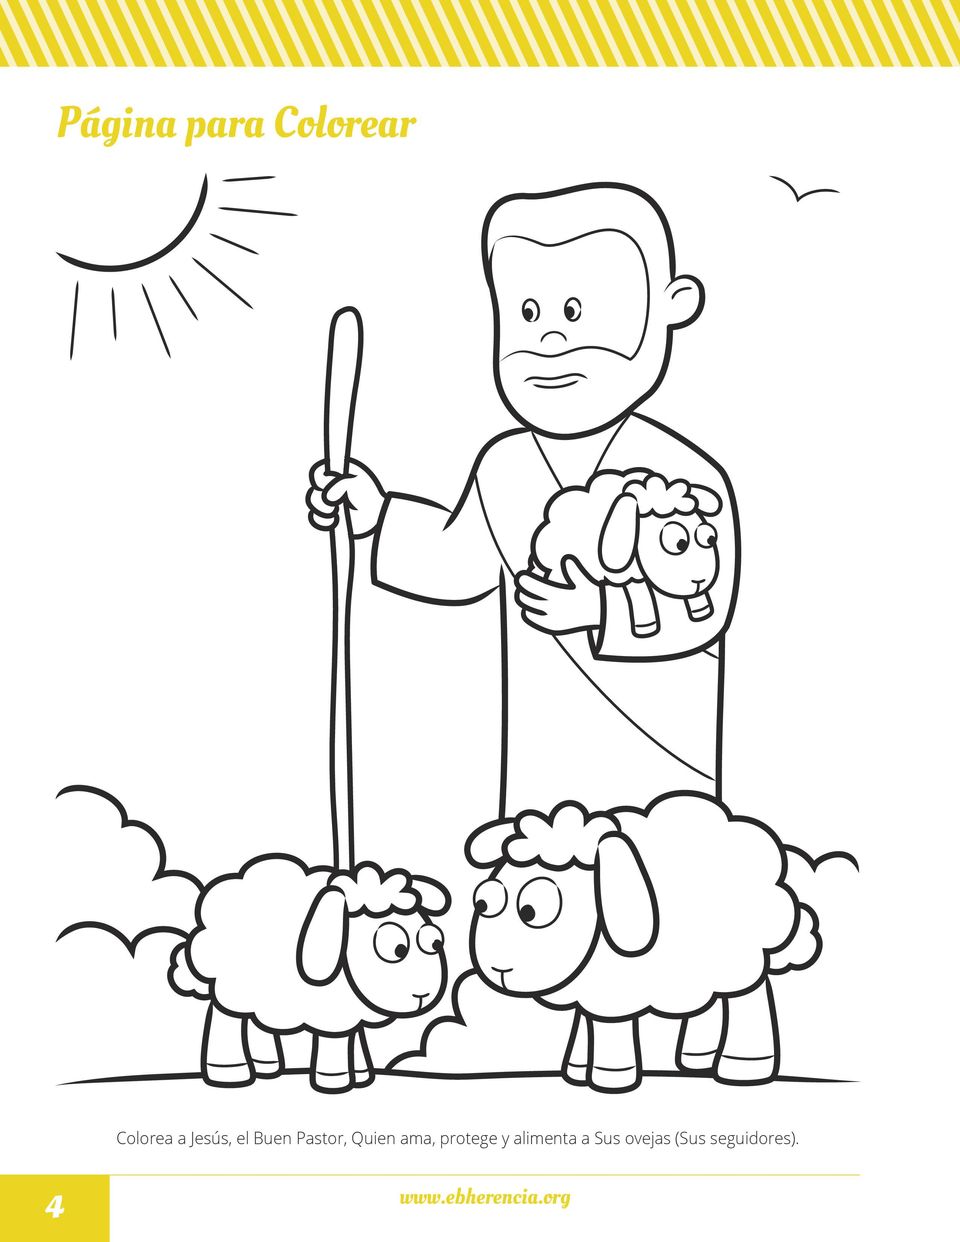 protege y alimenta a Sus ovejas